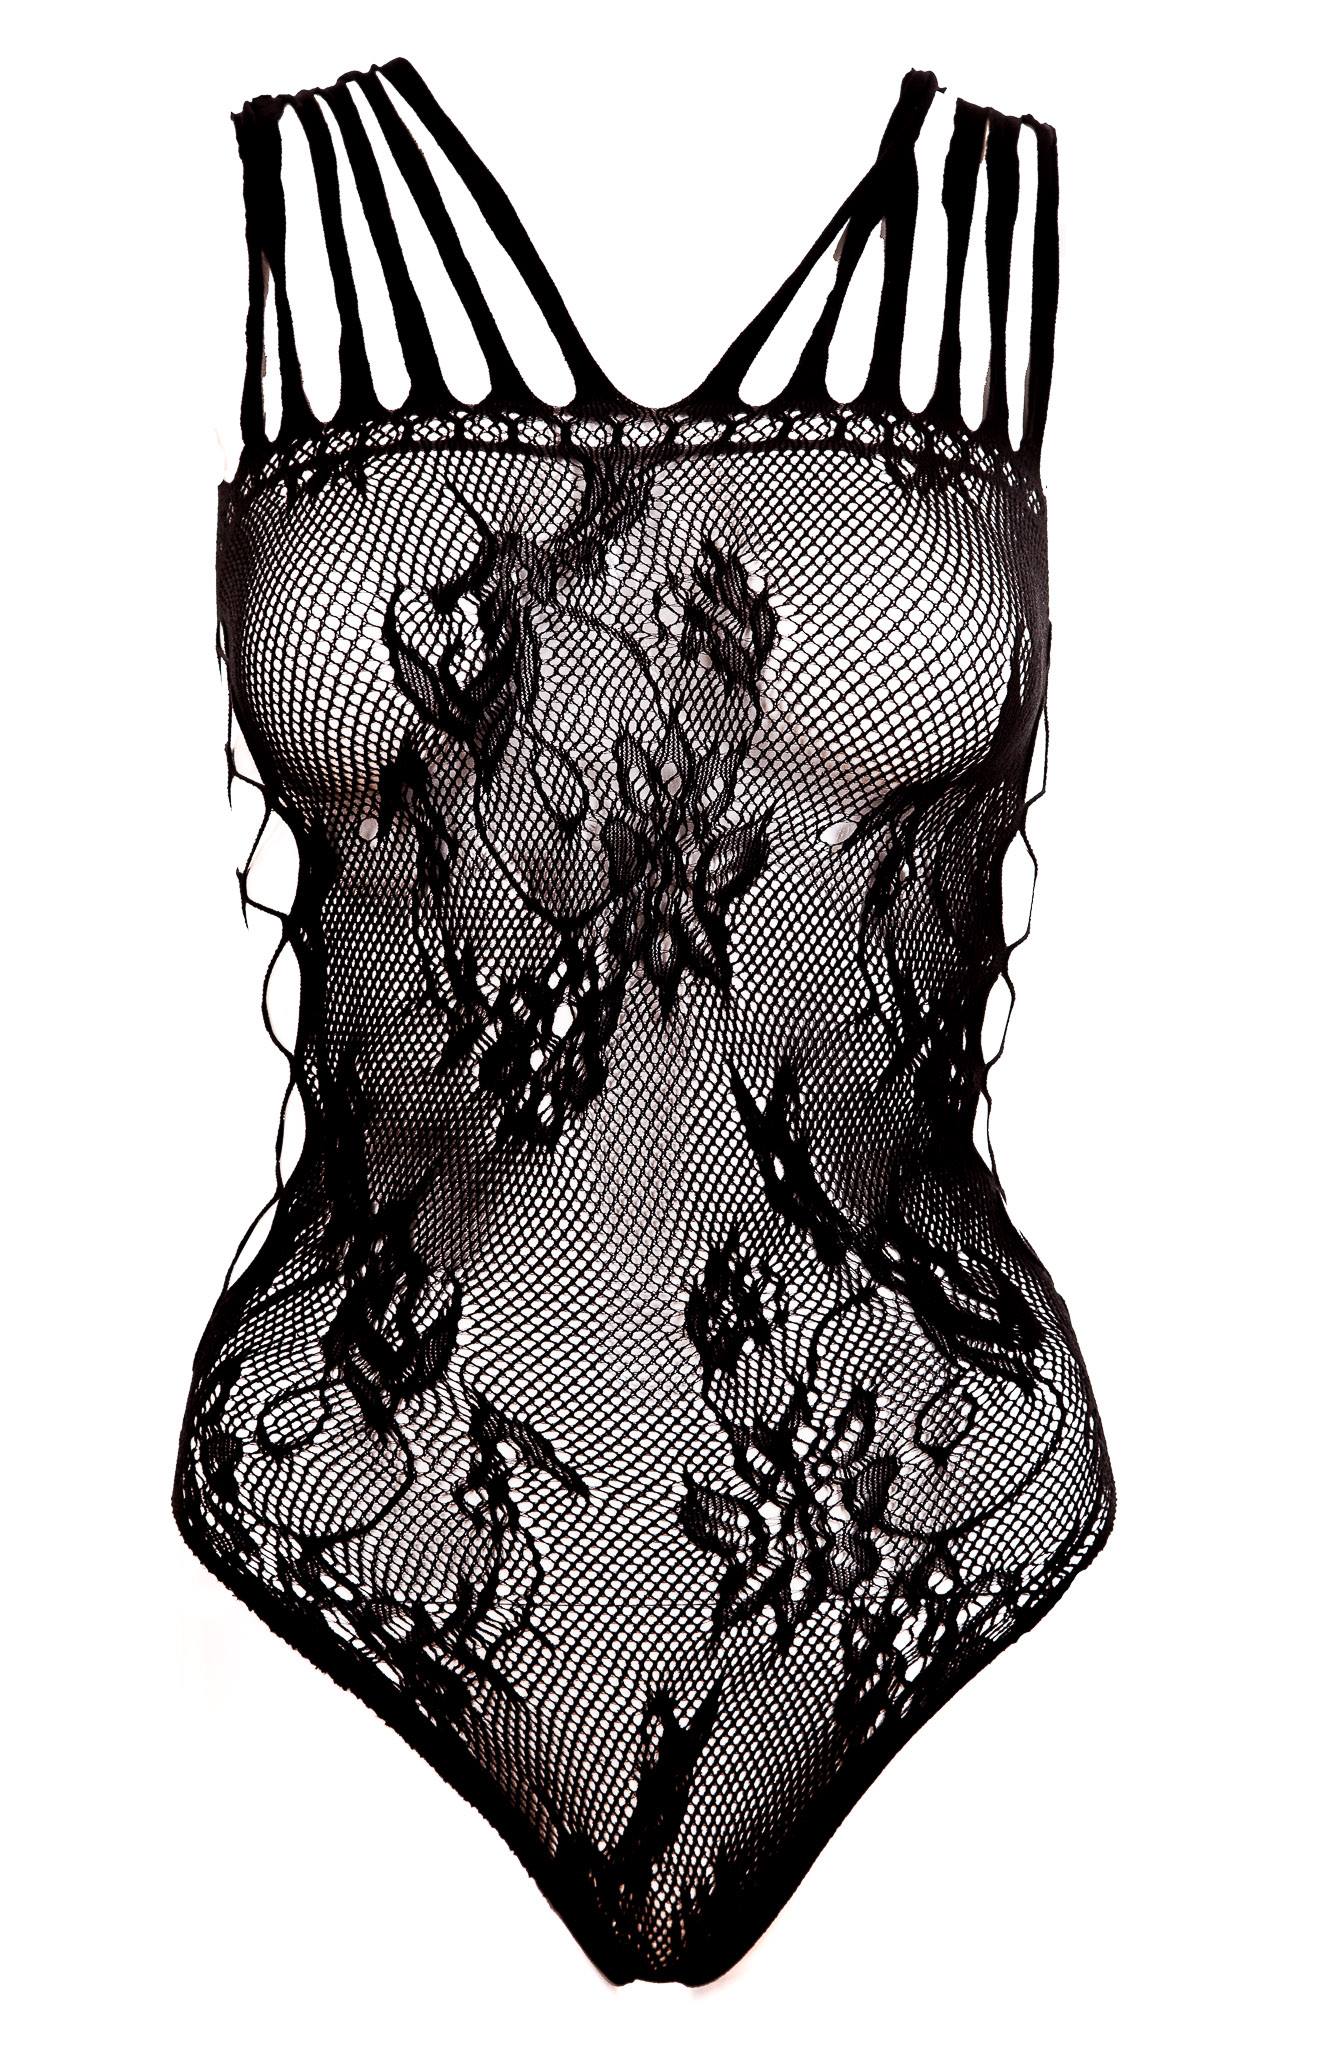 Music Legs, Lace sort teddy - Dette teddyundertøj har et delikat mønster, der tilføjer feminin og forførende flair. De åbne kiler på siderne tilføjer iøjnefaldende detaljer og øger det sensuelle udtryk.